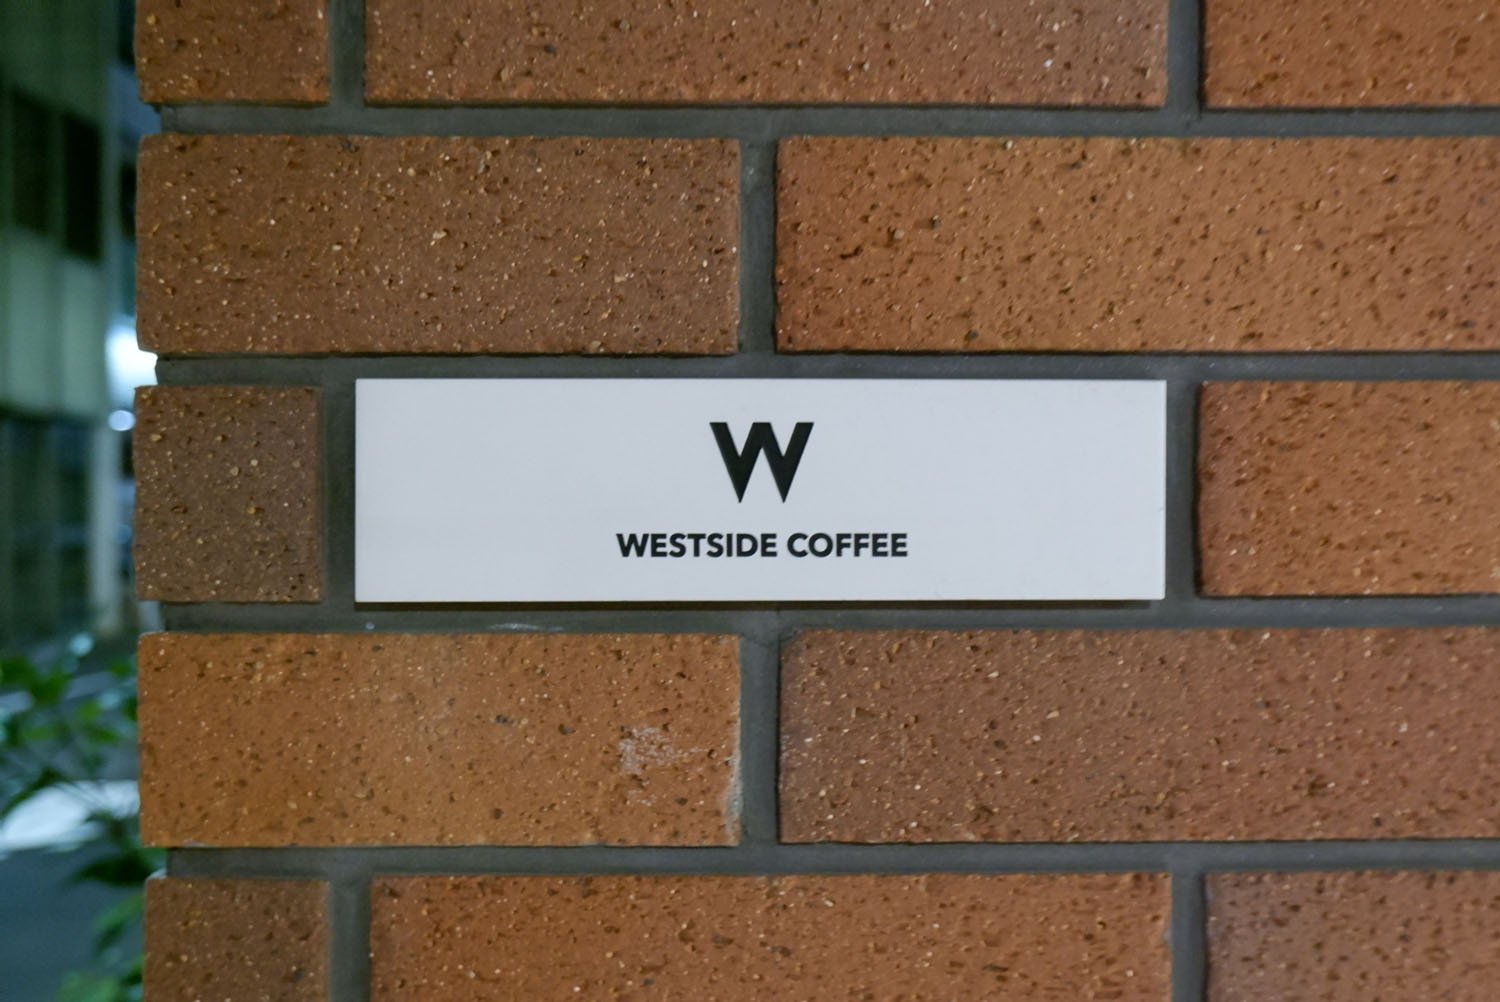 WESTSIDE COFFEE